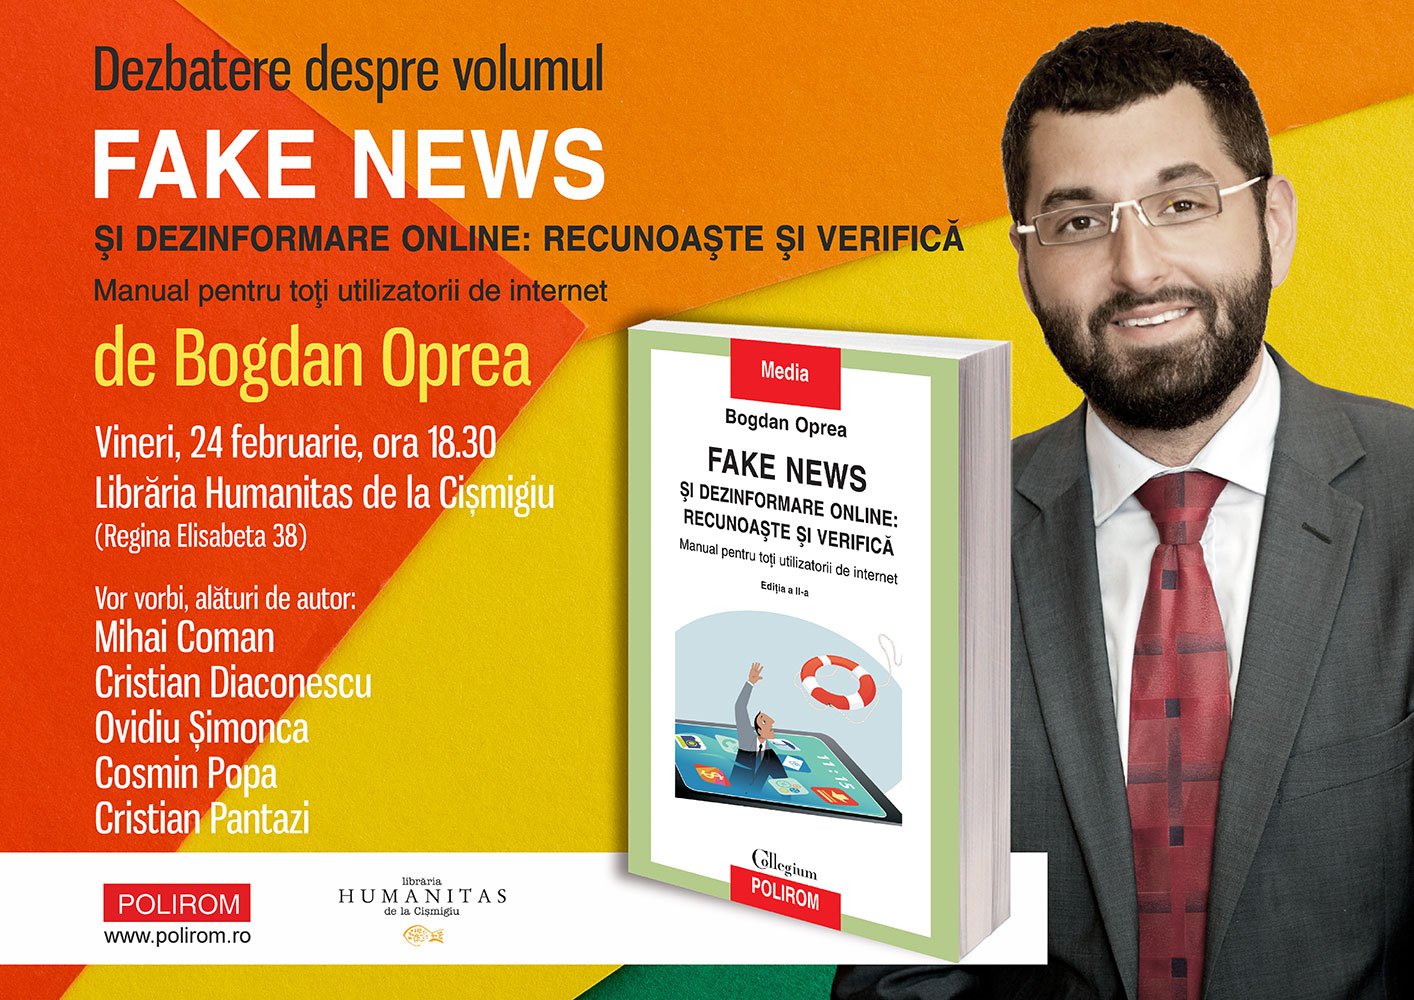  Dezbatere despre volumul Fake news şi dezinformare online de Bogdan Oprea